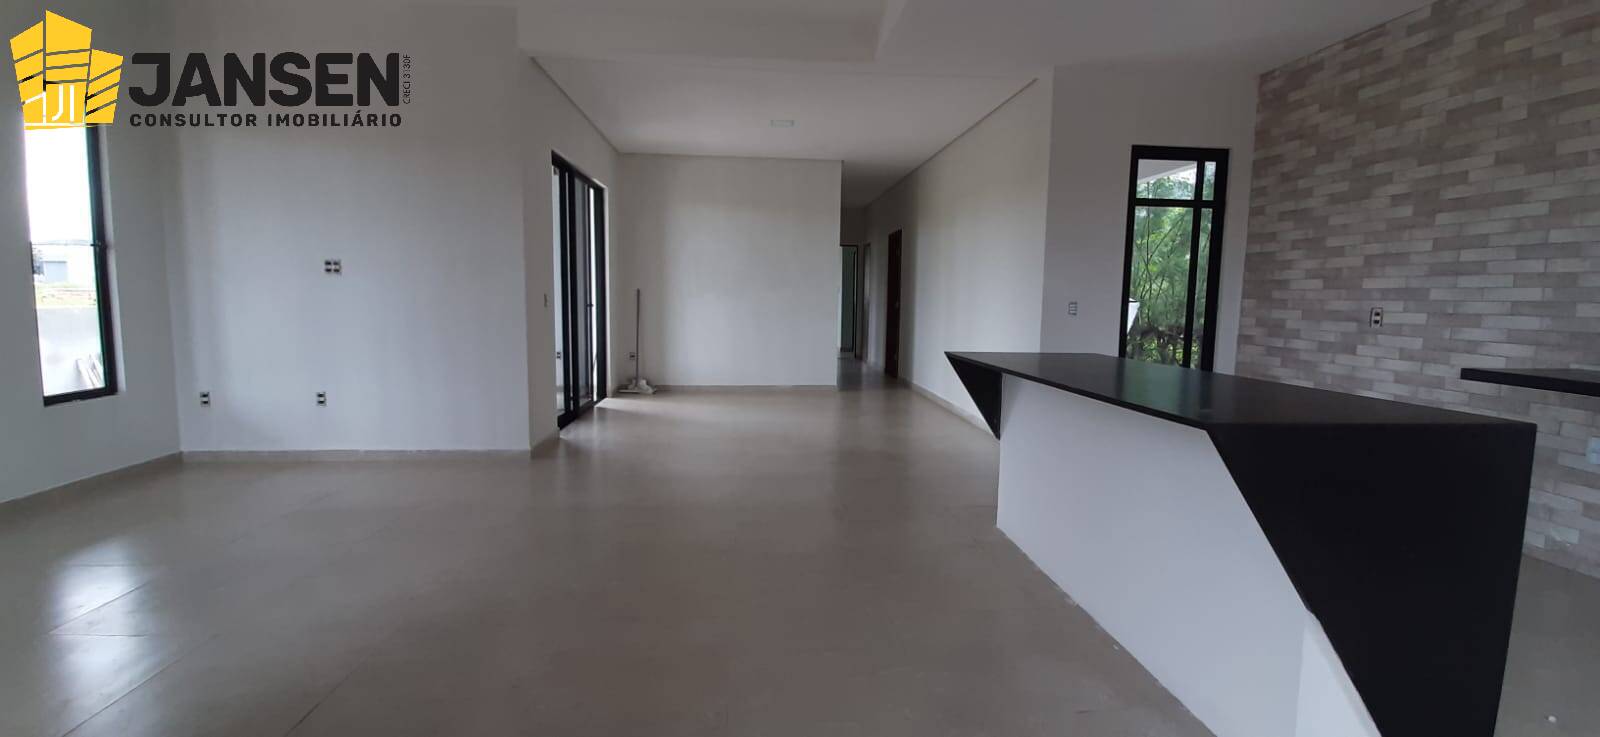 Casa, 3 quartos, 750 m² - Foto 3